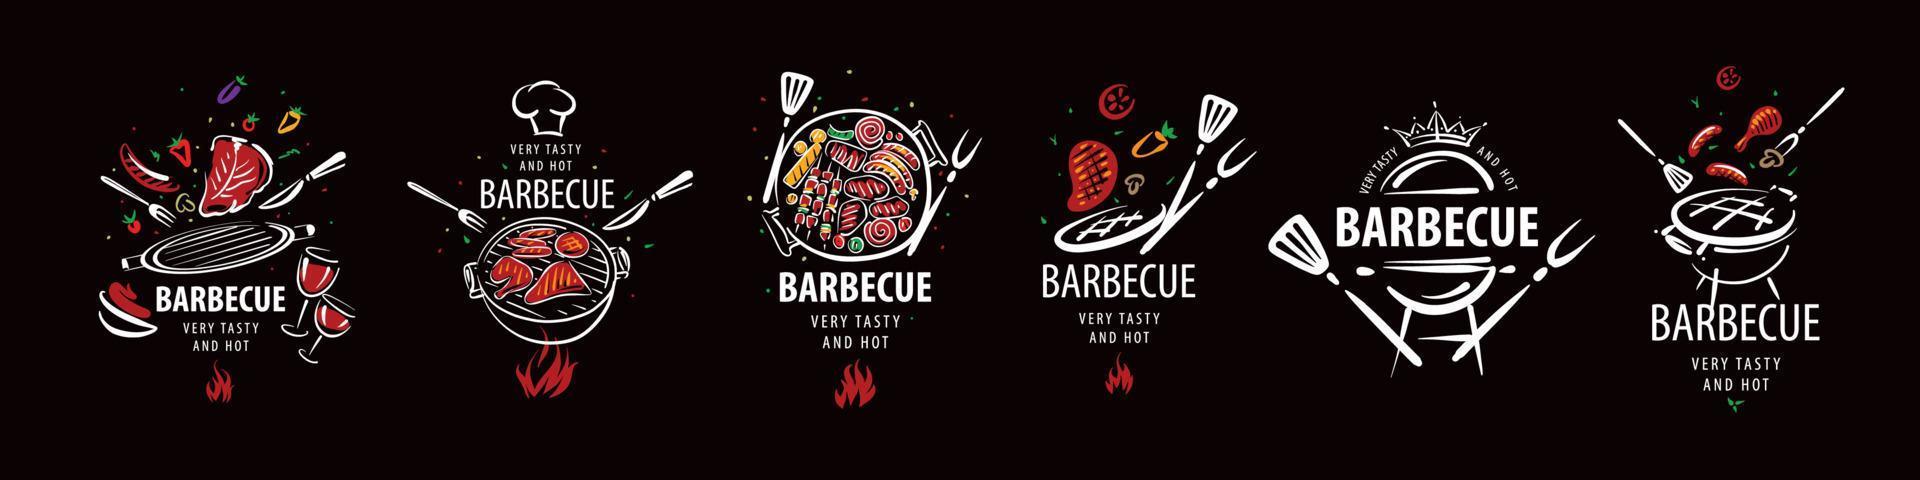 una serie di illustrazioni di barbecue vettoriali disegnate isolate su uno sfondo nero